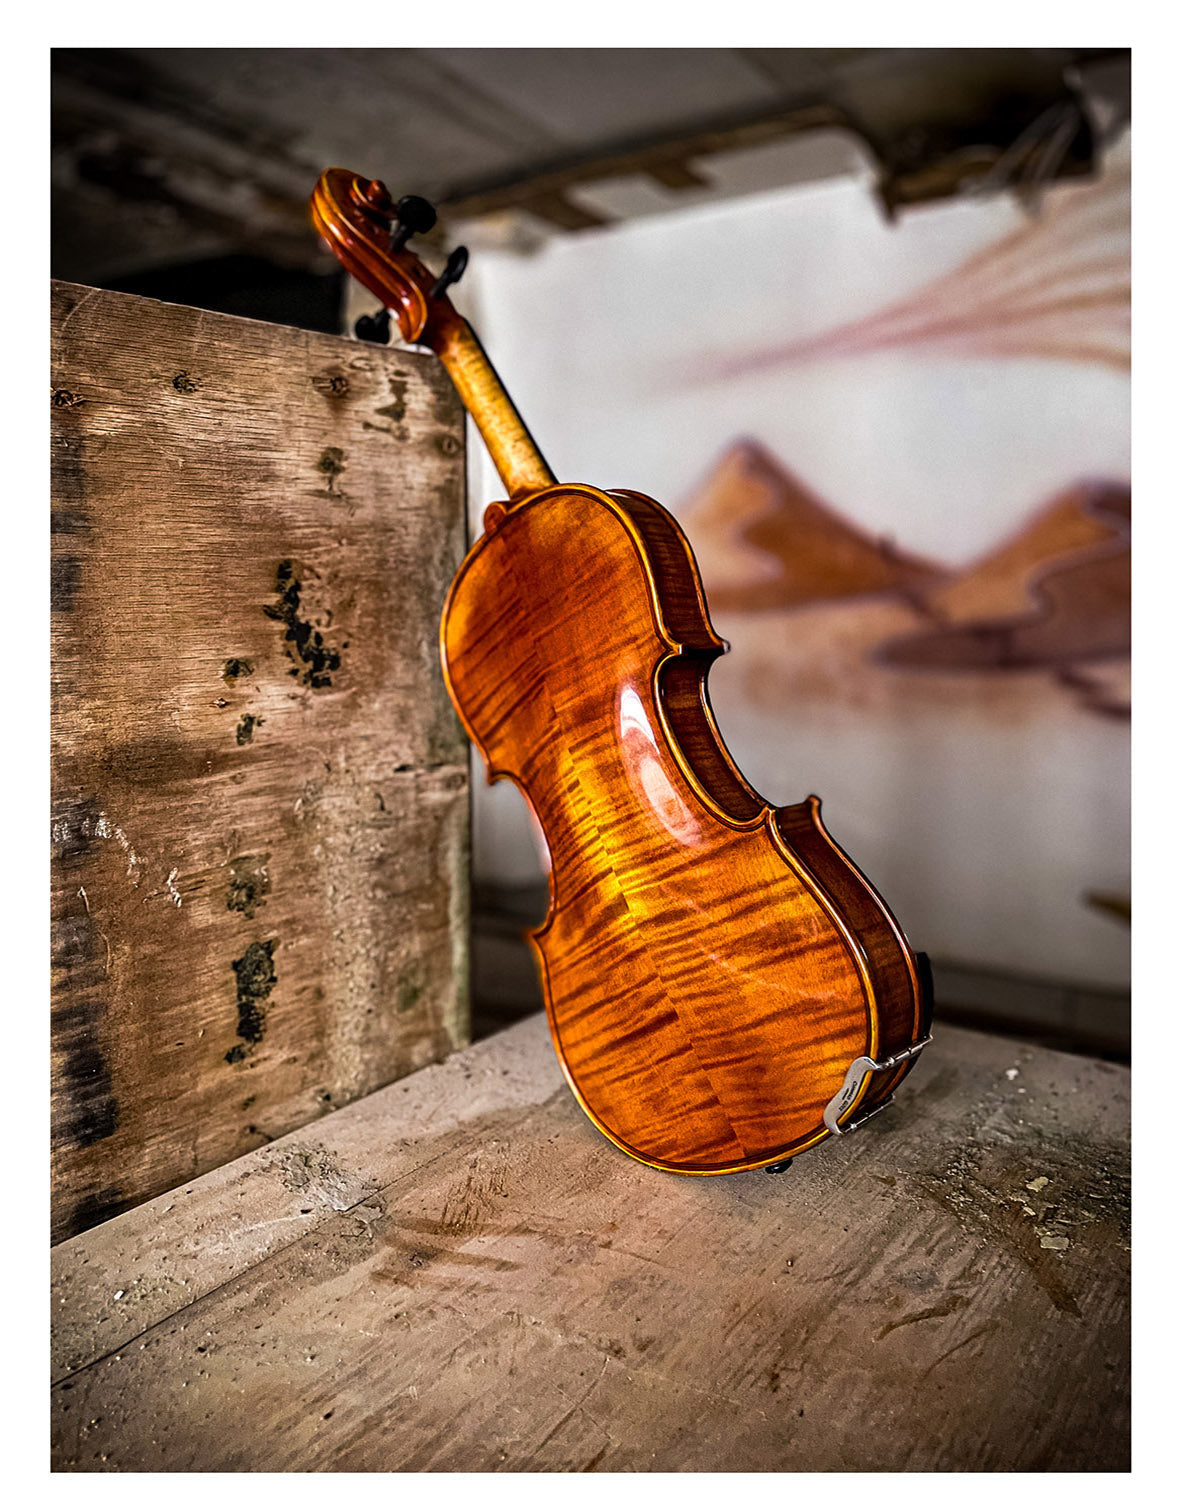 CONTEMPORARY Violin #123 CT